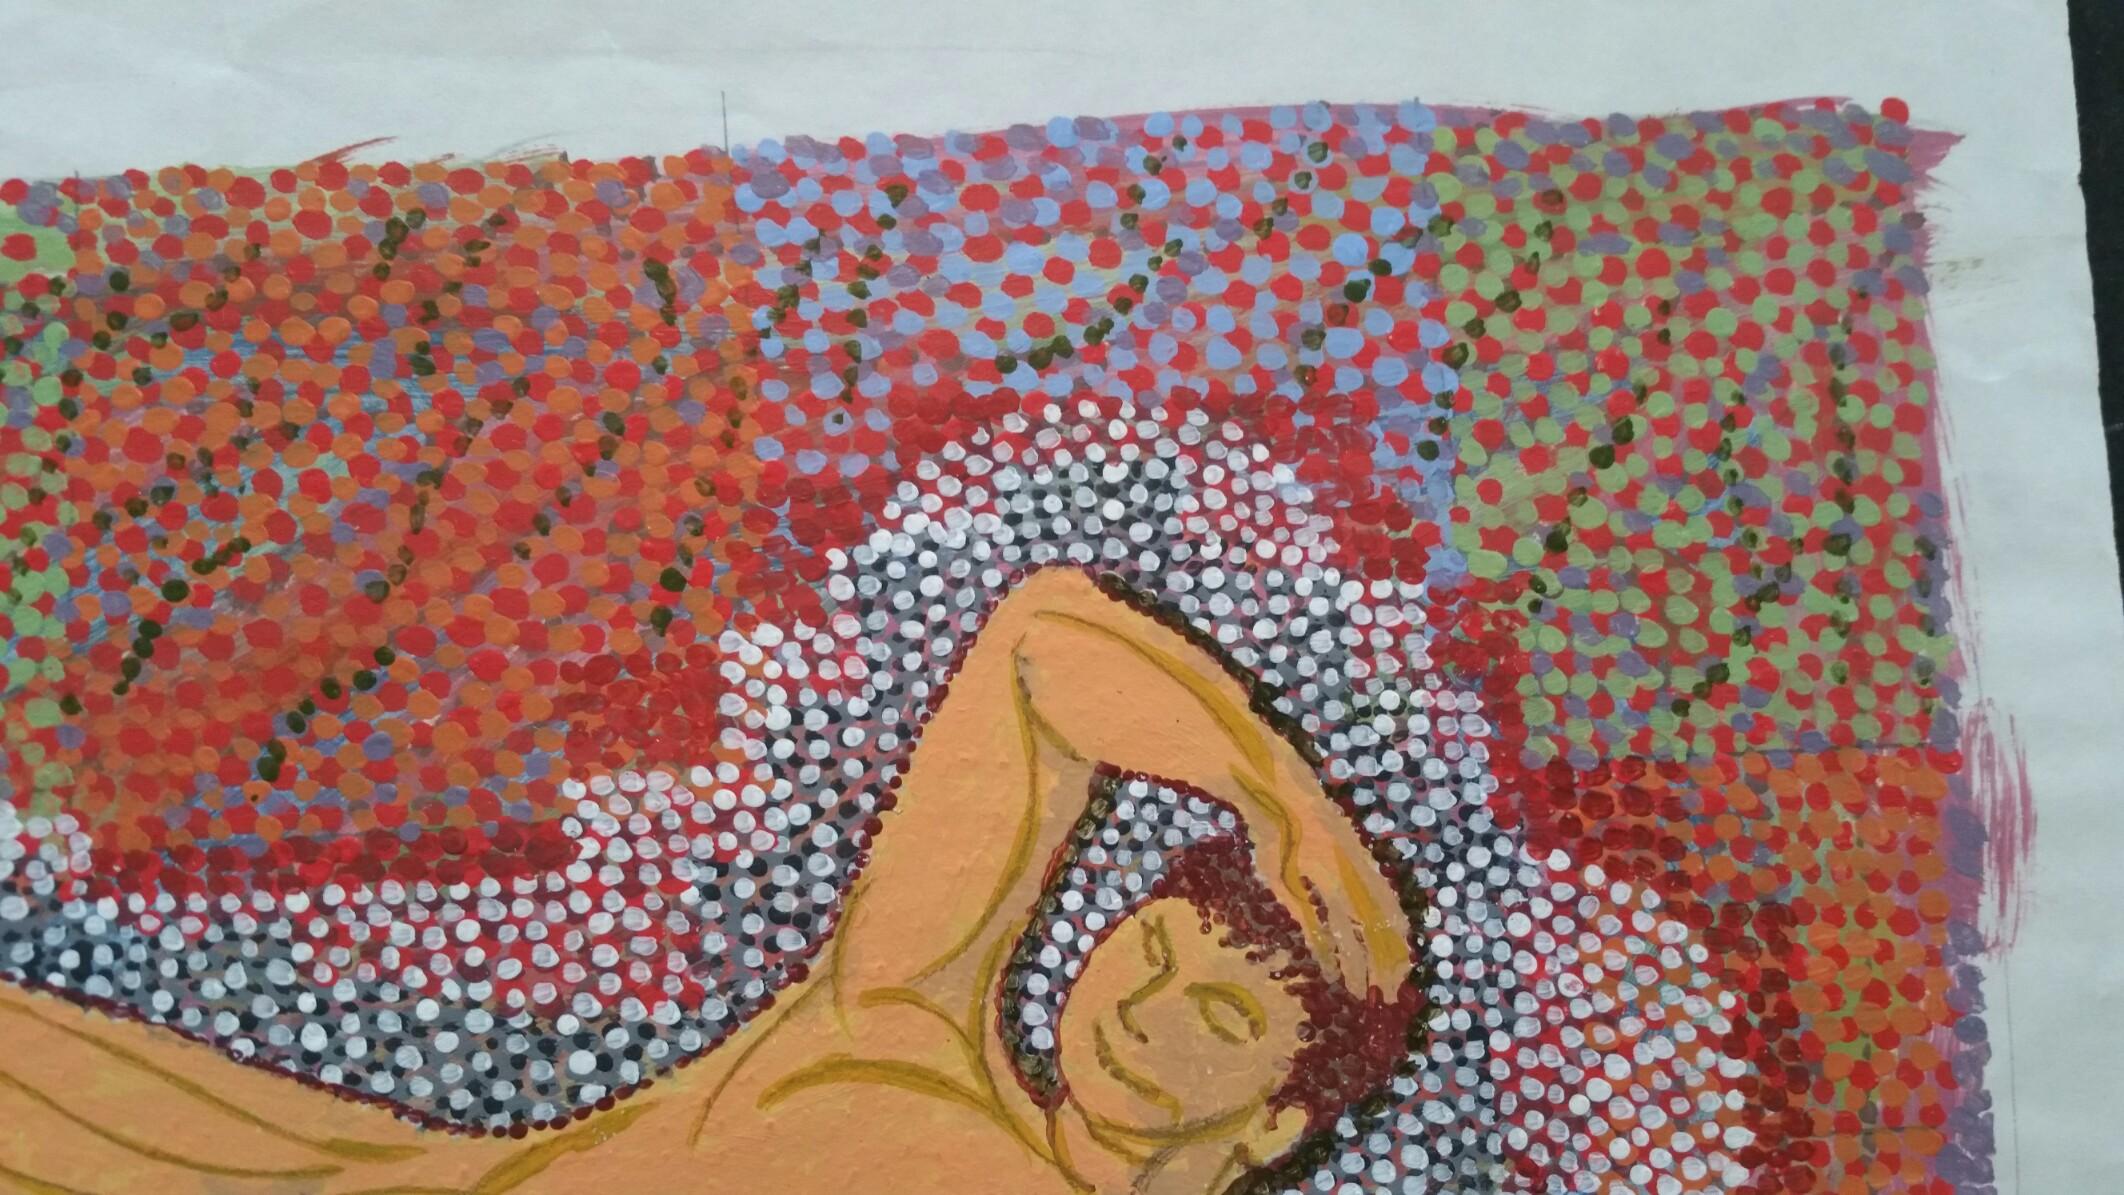 Nu masculin couché pointilliste
par Louis Bellon (français 1908-1998)
paraphé en bas à droite
peinture à la gouache sur papier, non encadrée
dimensions : 5.5 x 10 pouces (la feuille mesure en tout 8.25 x 11.9 pouces)

provenance : collection privée